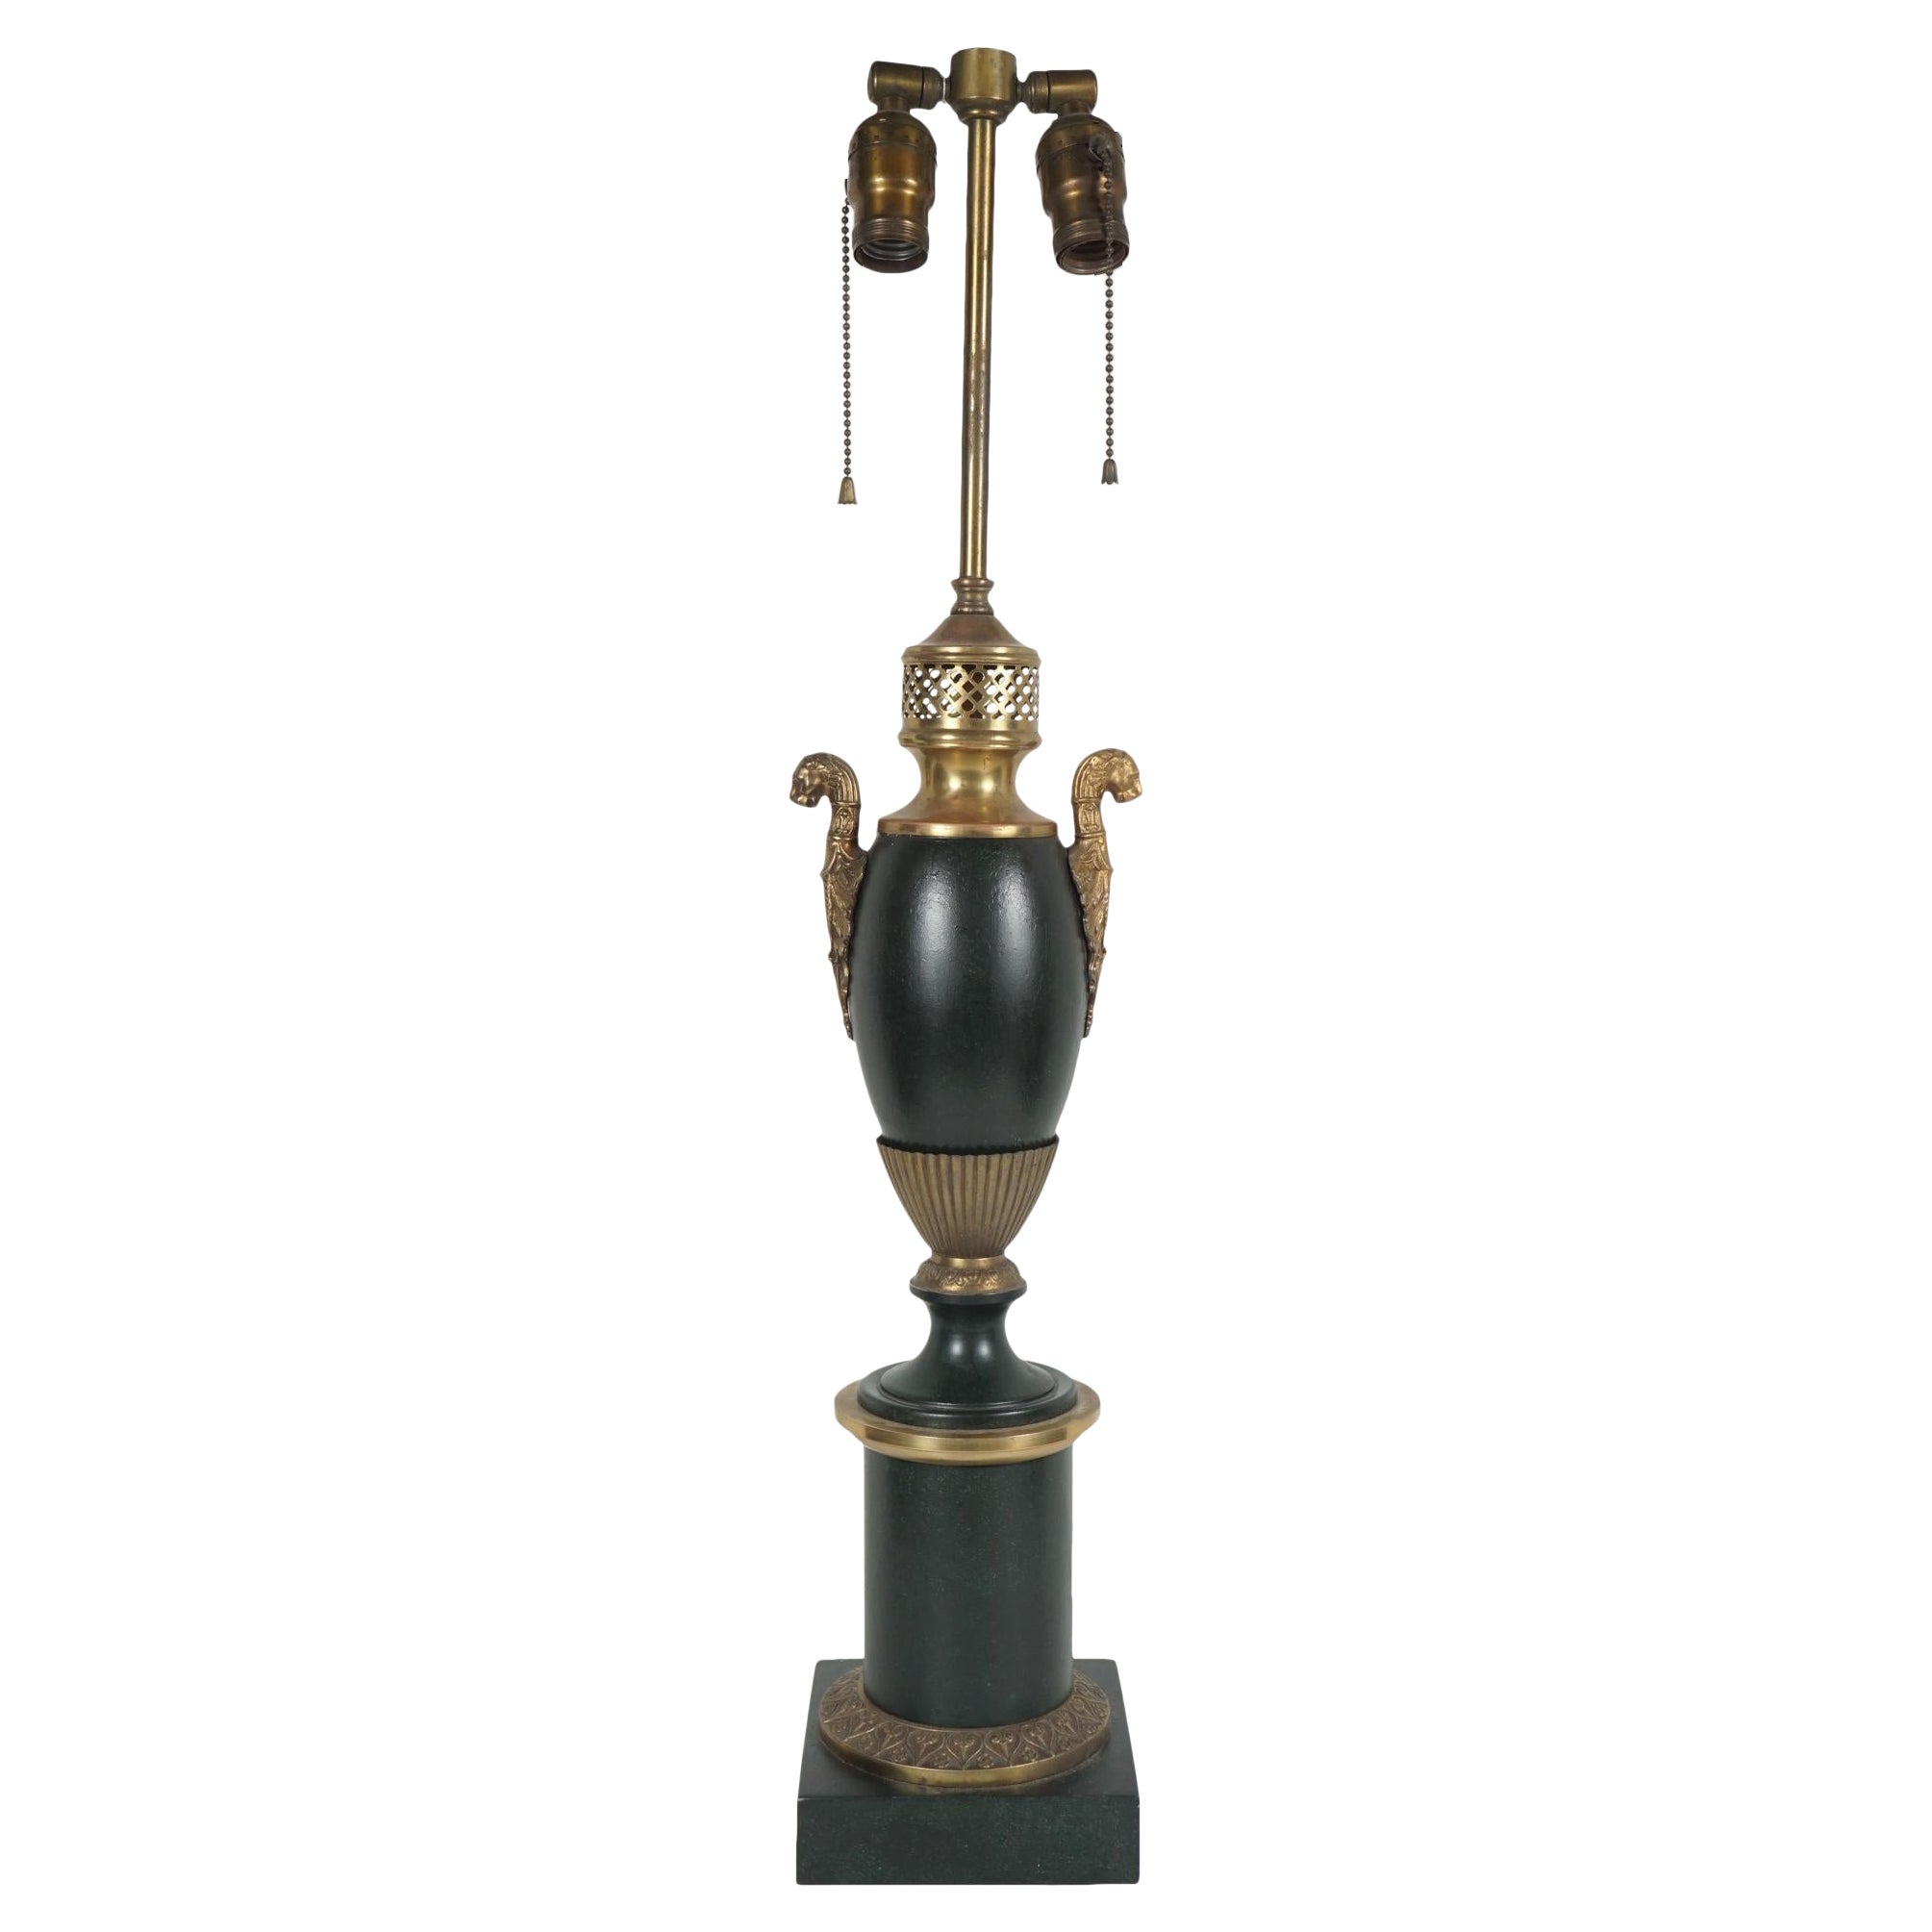 Lampe carcel en tôle française de la fin du 19ème ou du début du 20ème siècle provenant de la succession de Bunny Mellon.